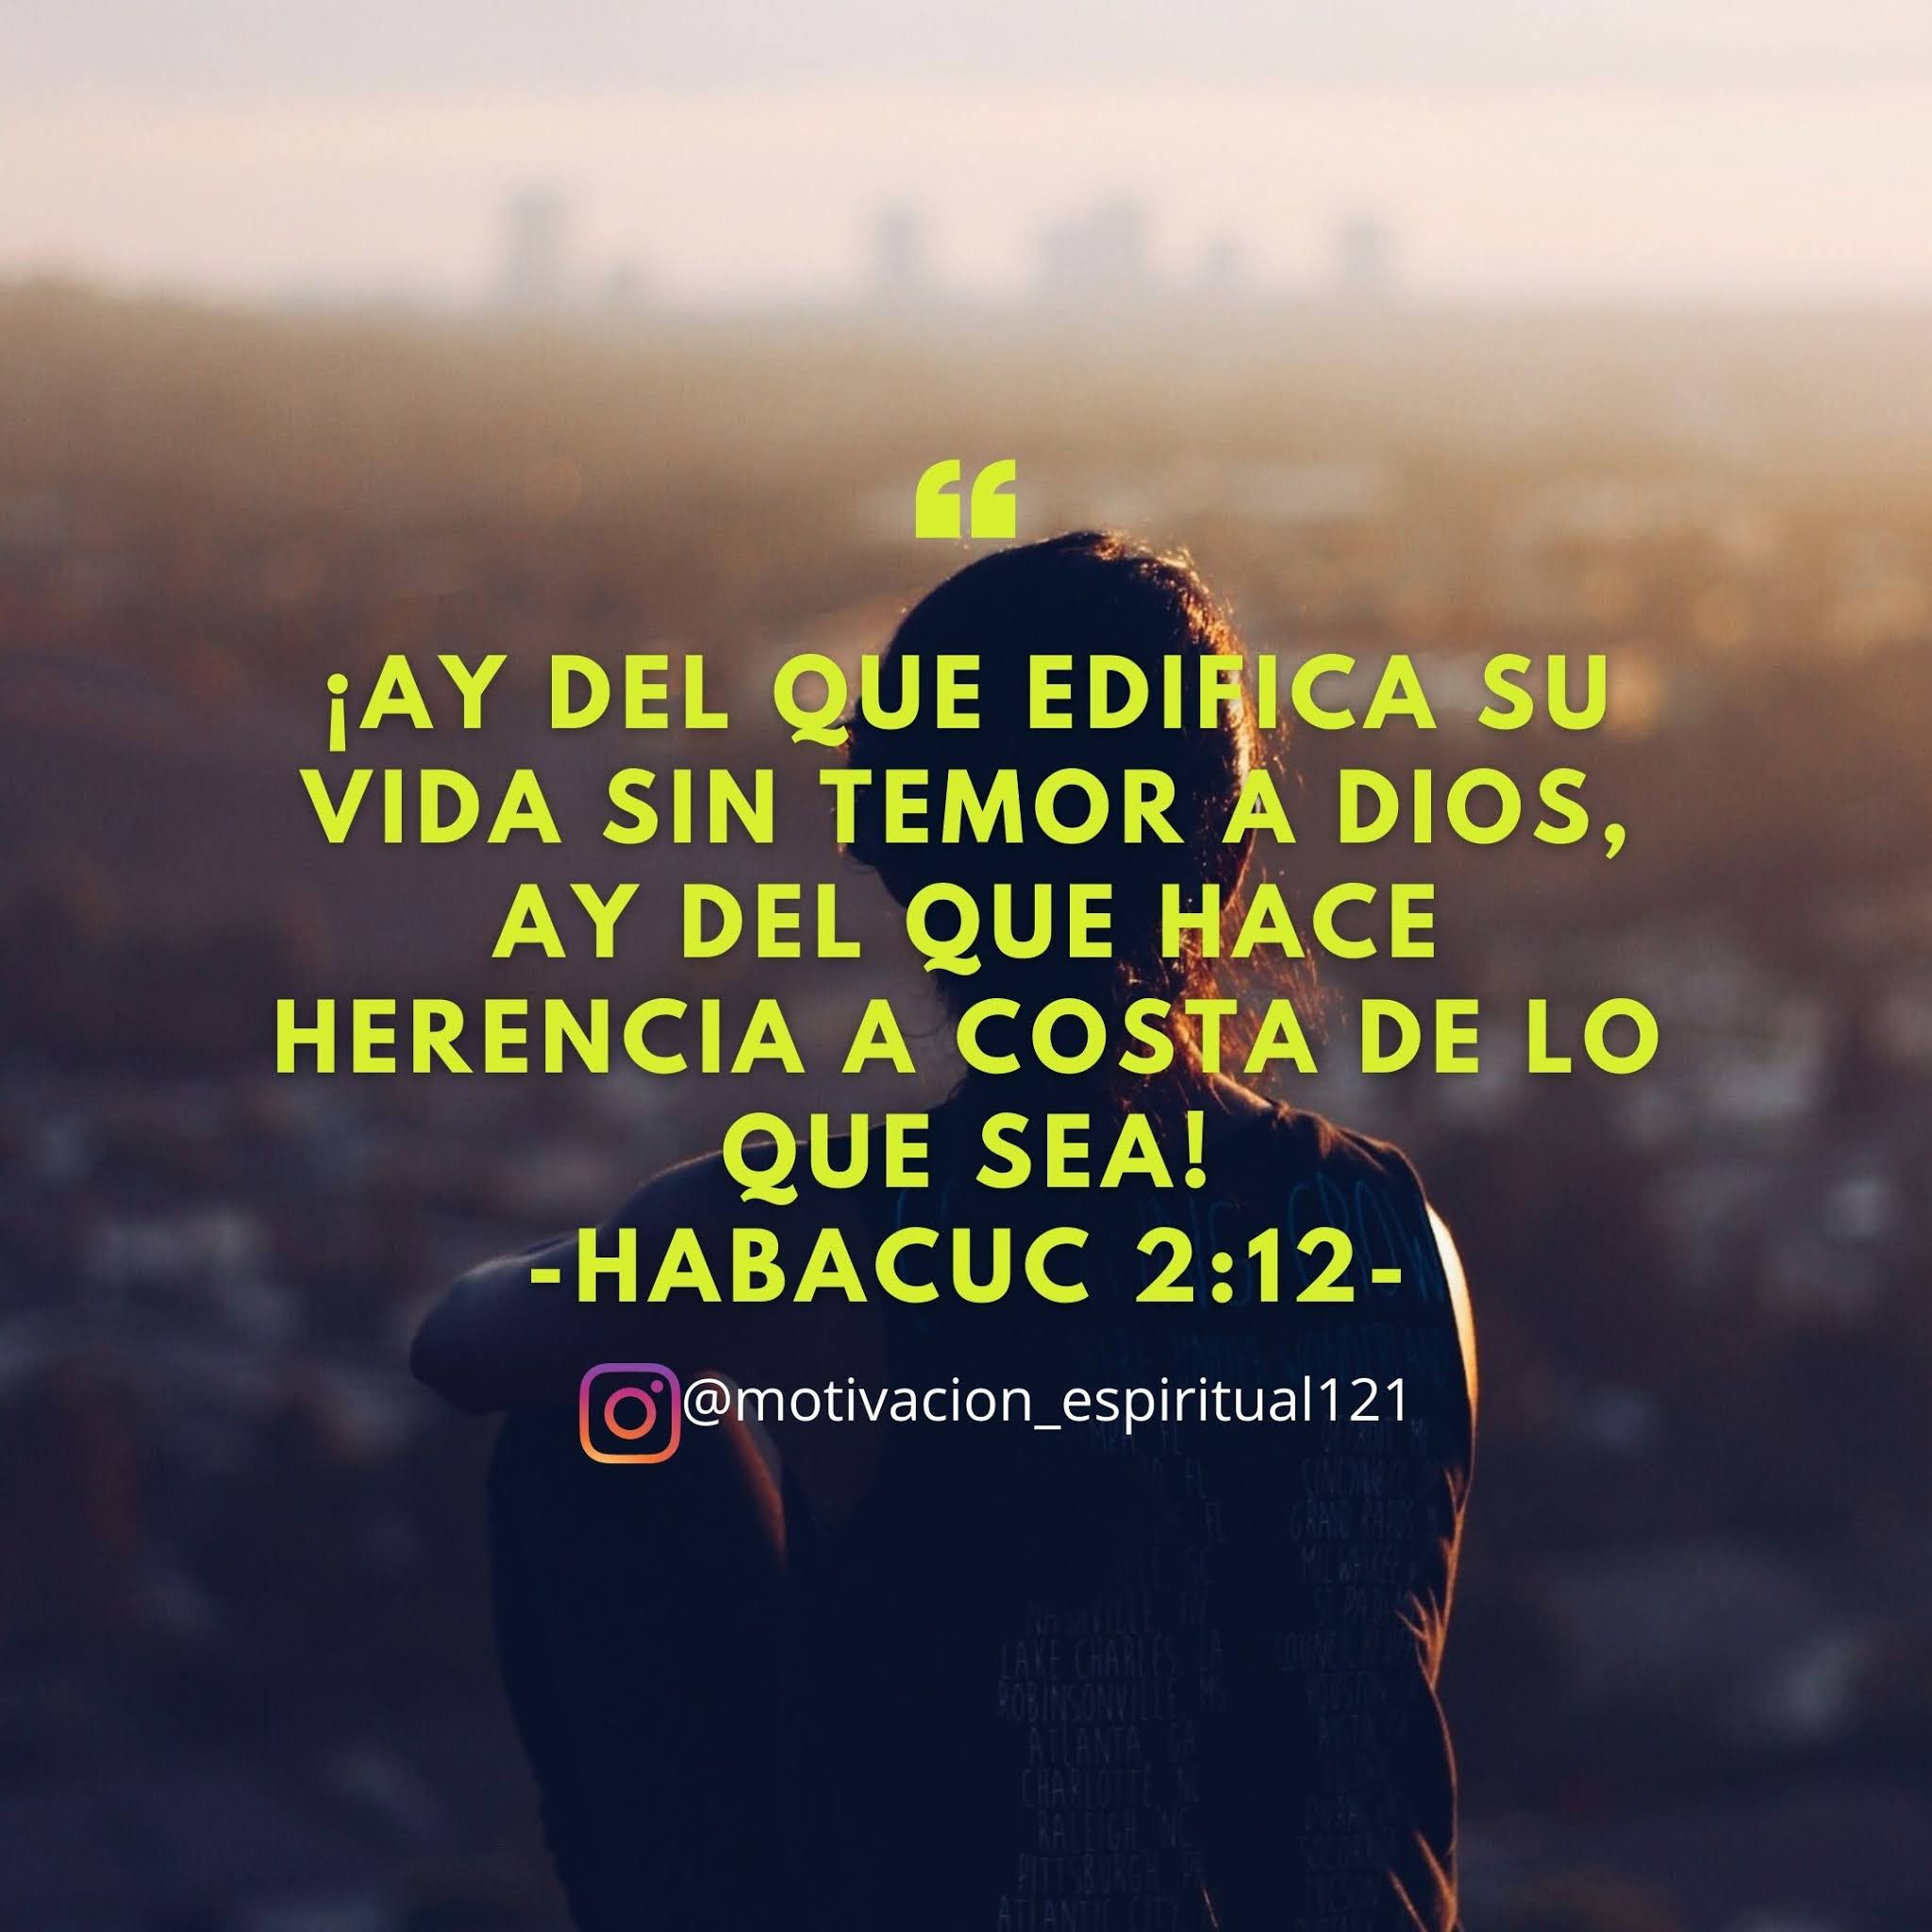 Habauc 2:12